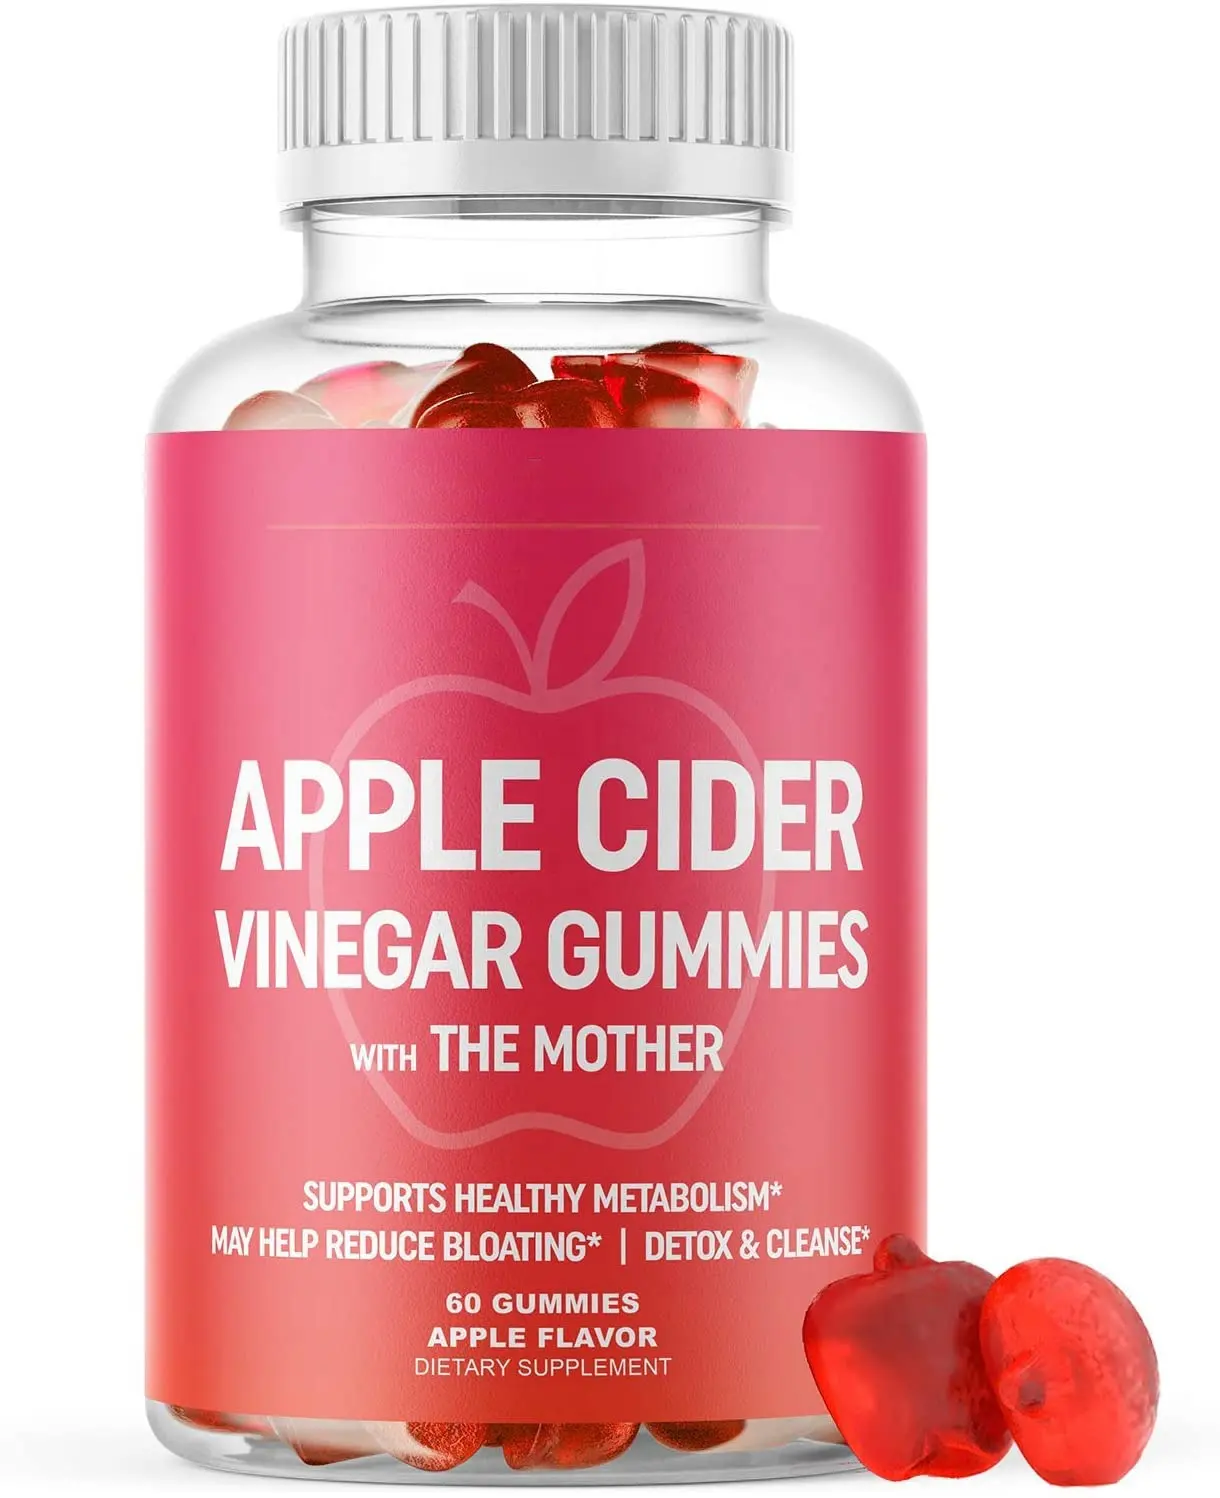 Etiqueta privada apple cider vinagre gummy, com vitamina b12, raiz de abelha para perda de peso, detox, emagrecimento, impulso imunidade